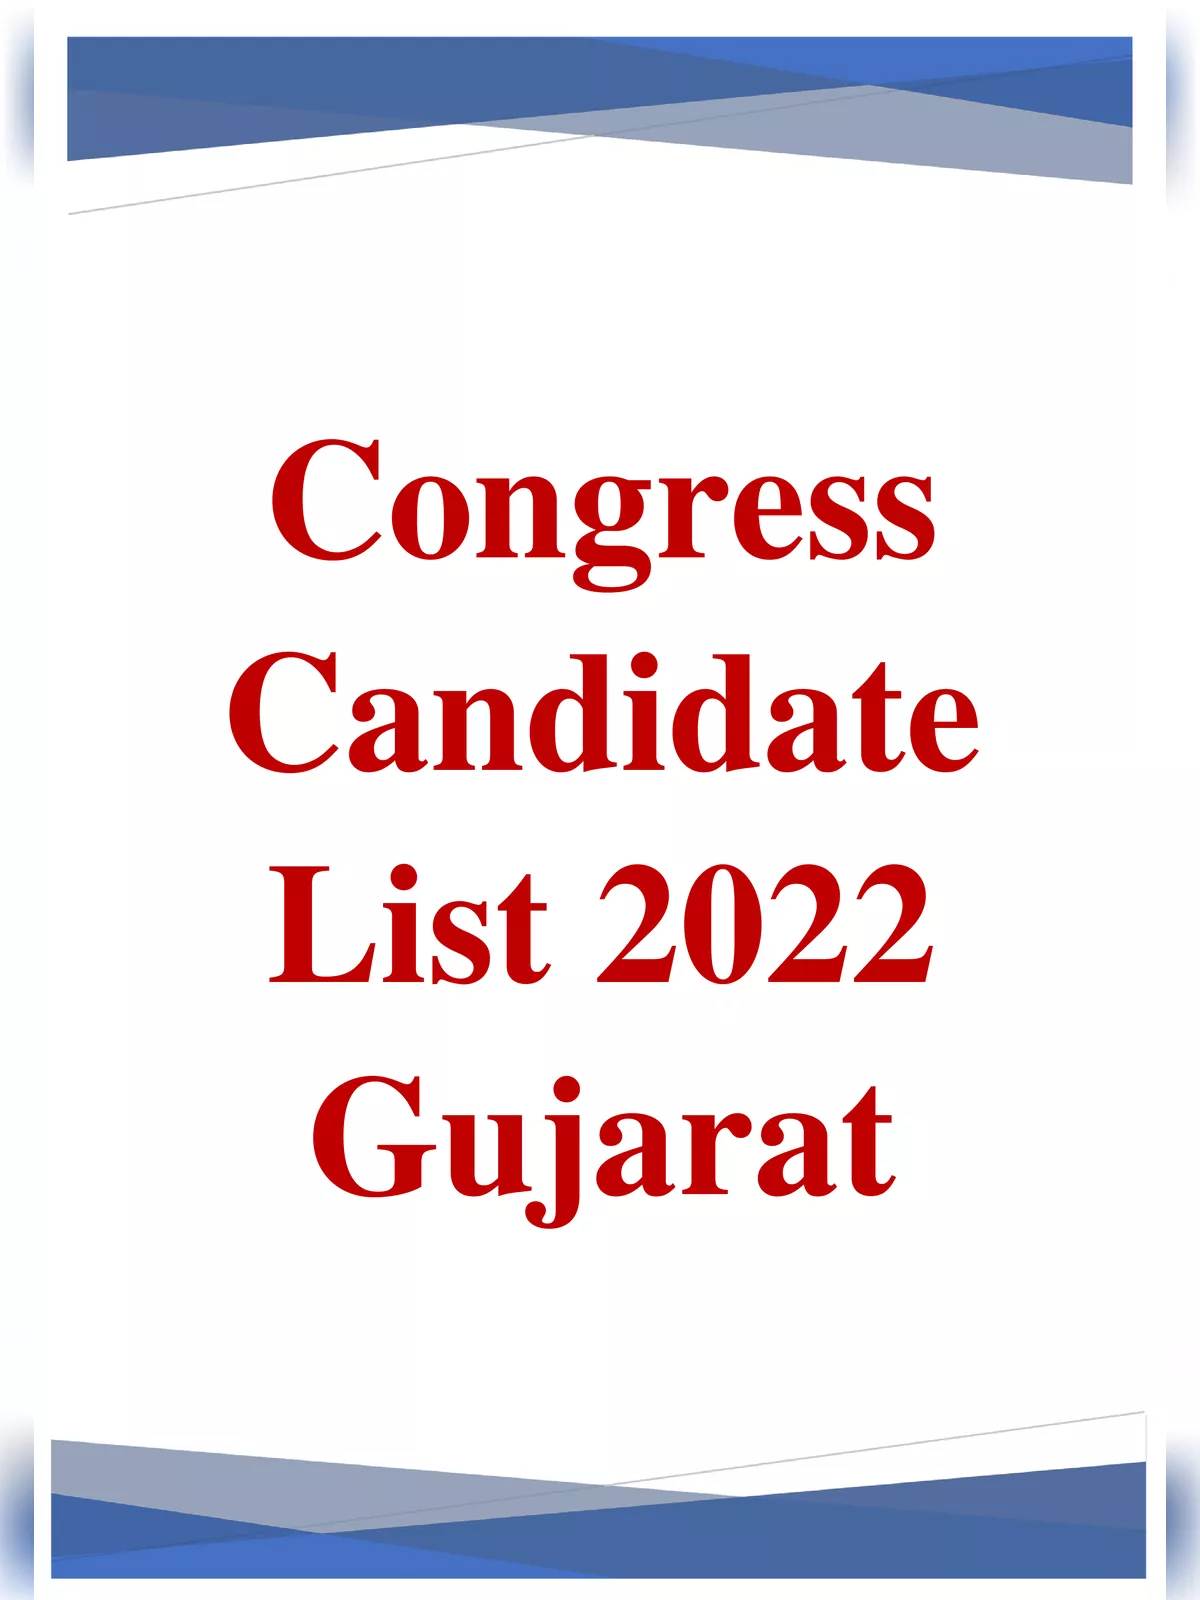 Congress Candidate List 2022 Gujarat